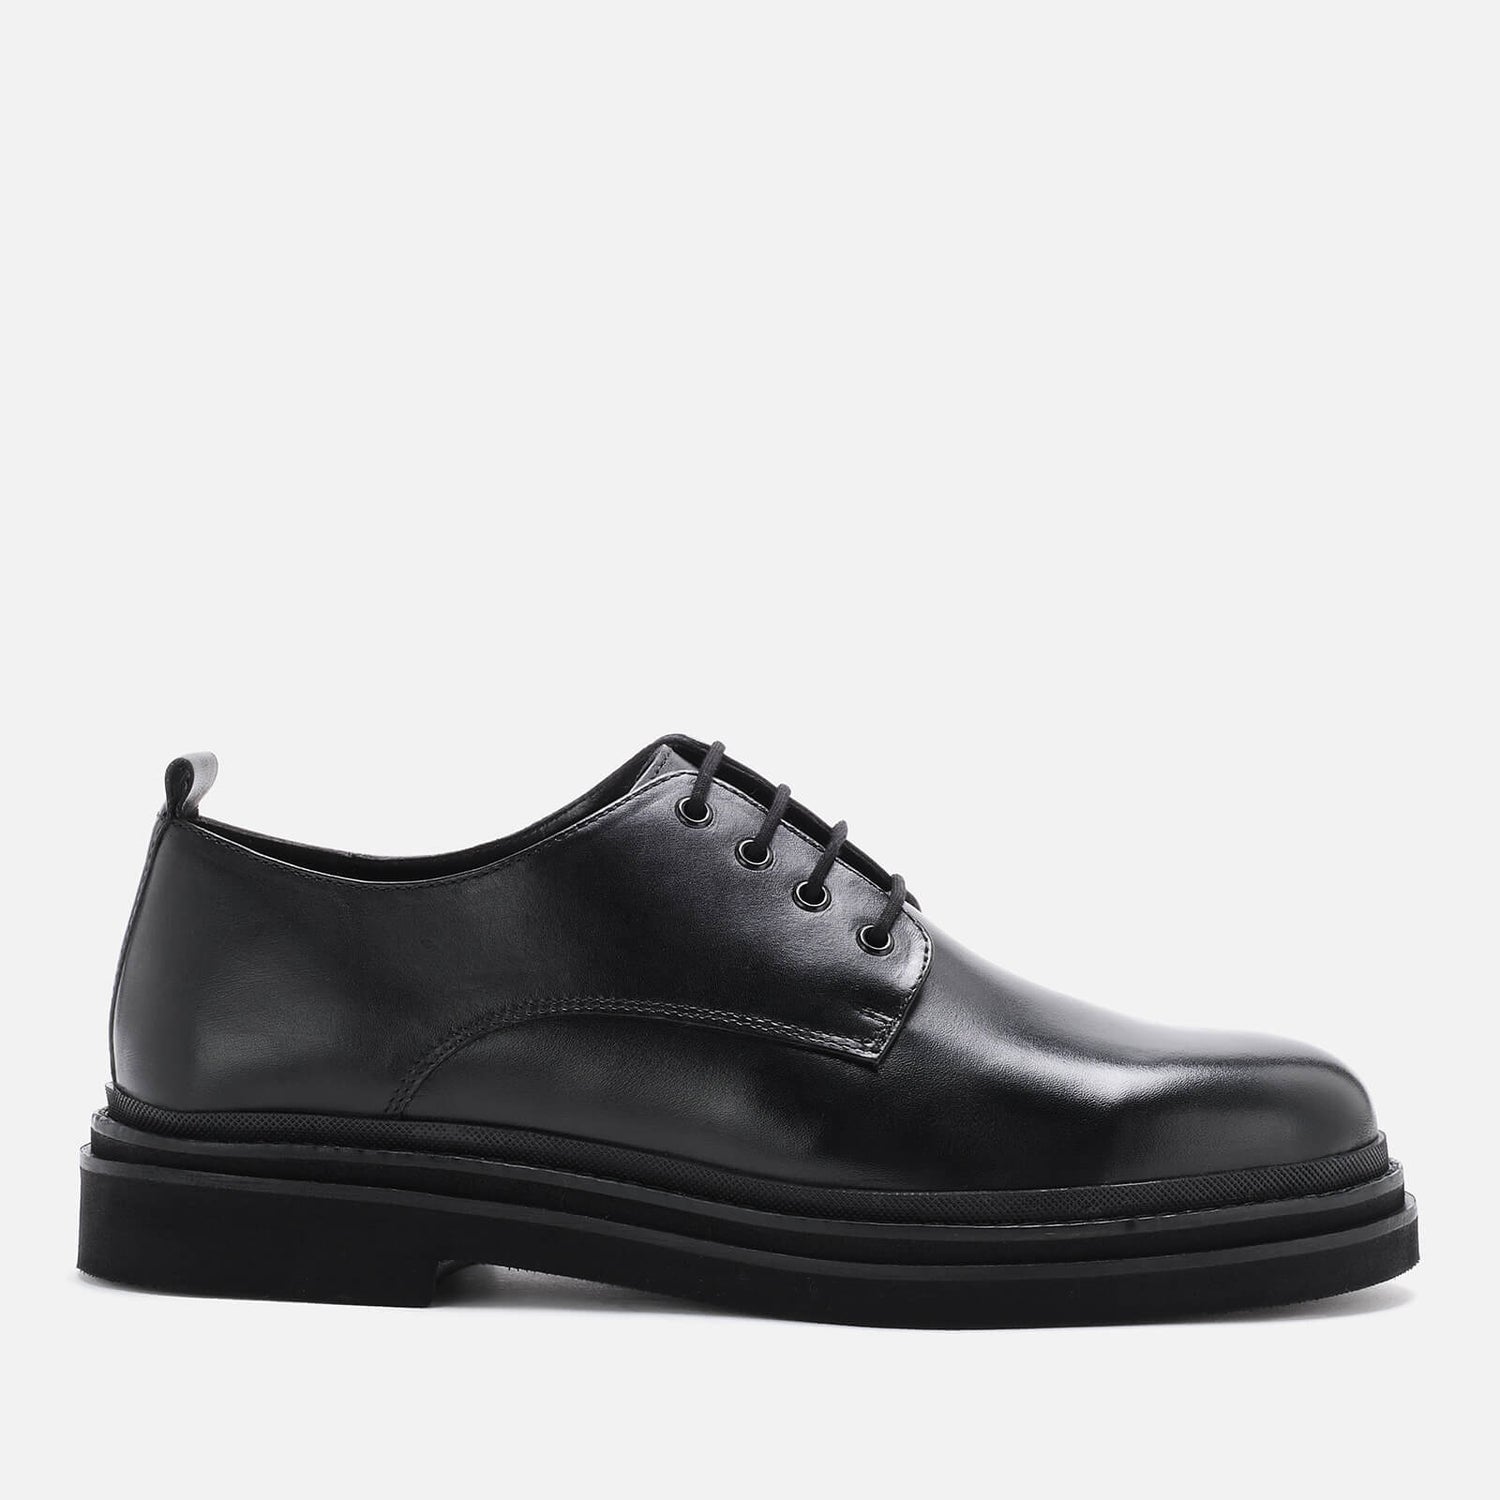 Walk London Men's Brooklyn Leather Derby Shoes - Black